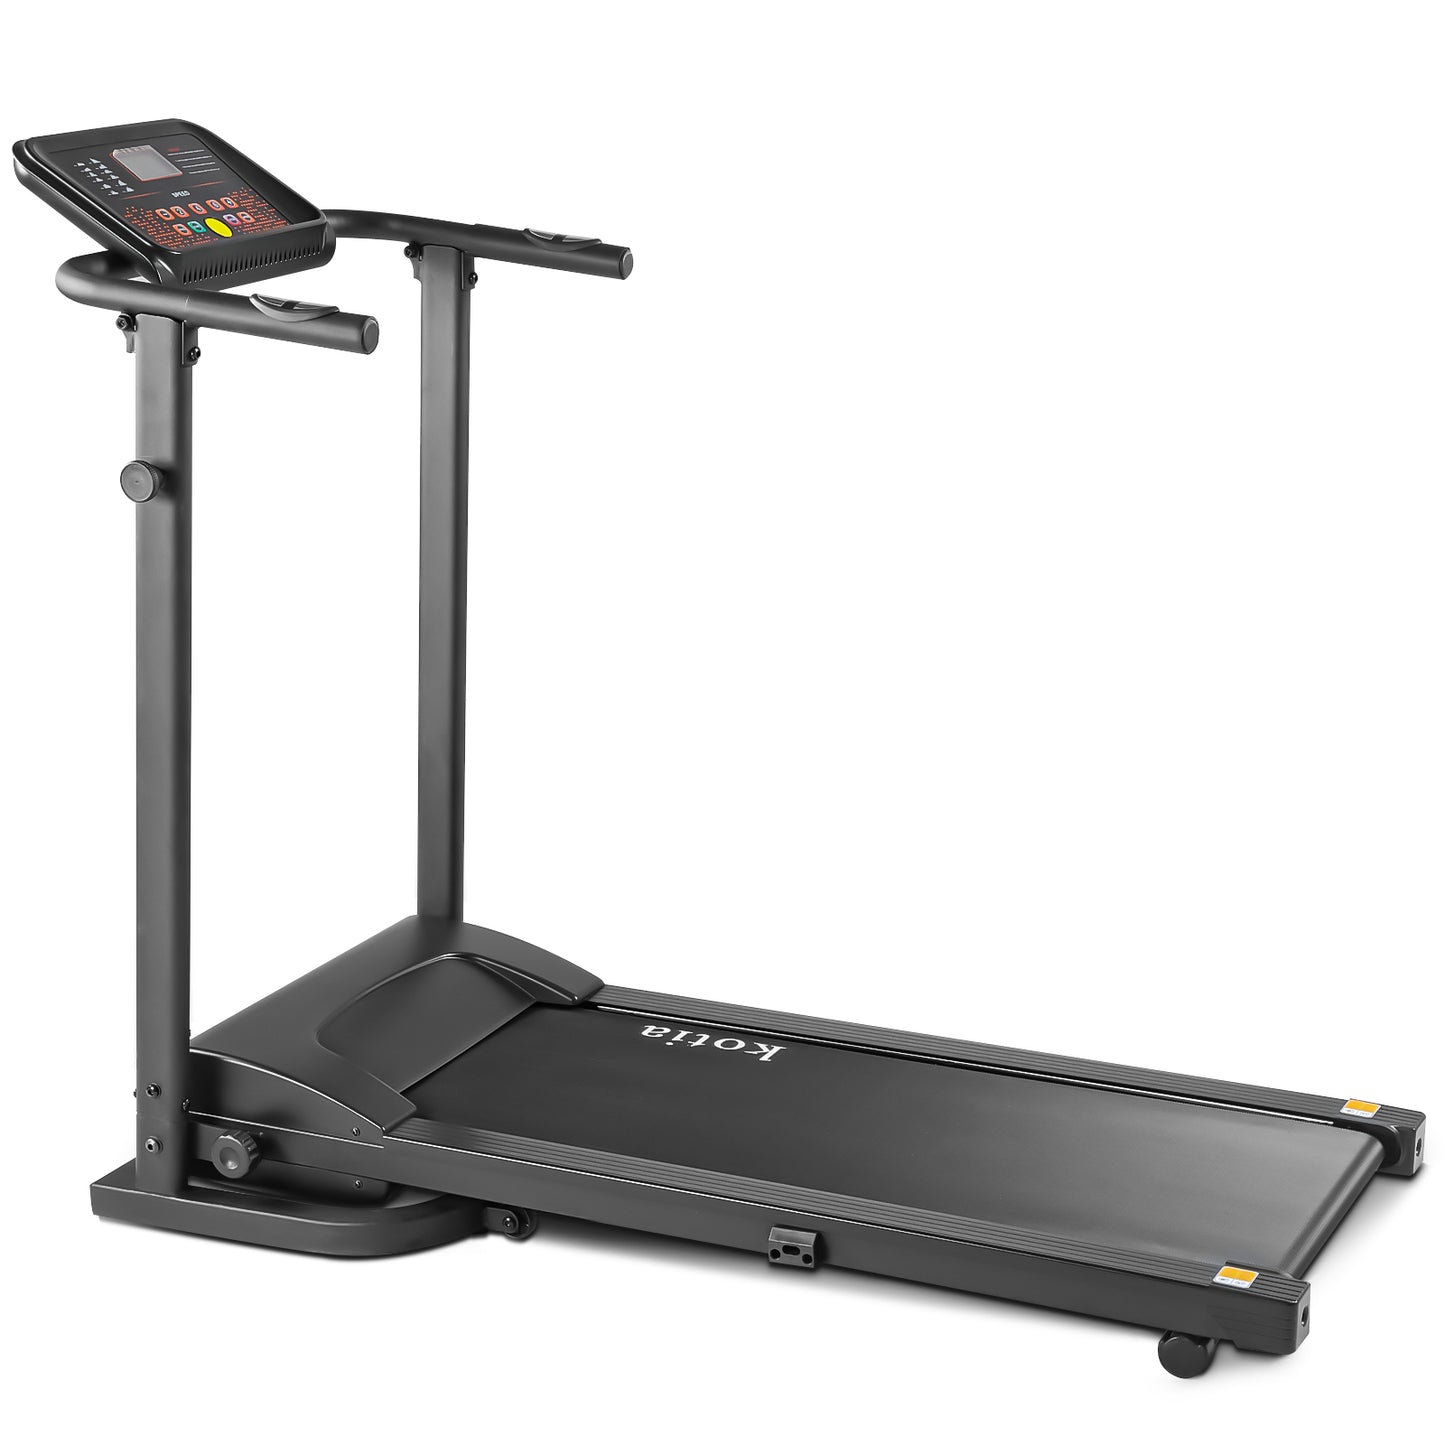 FlexFit Treadmill